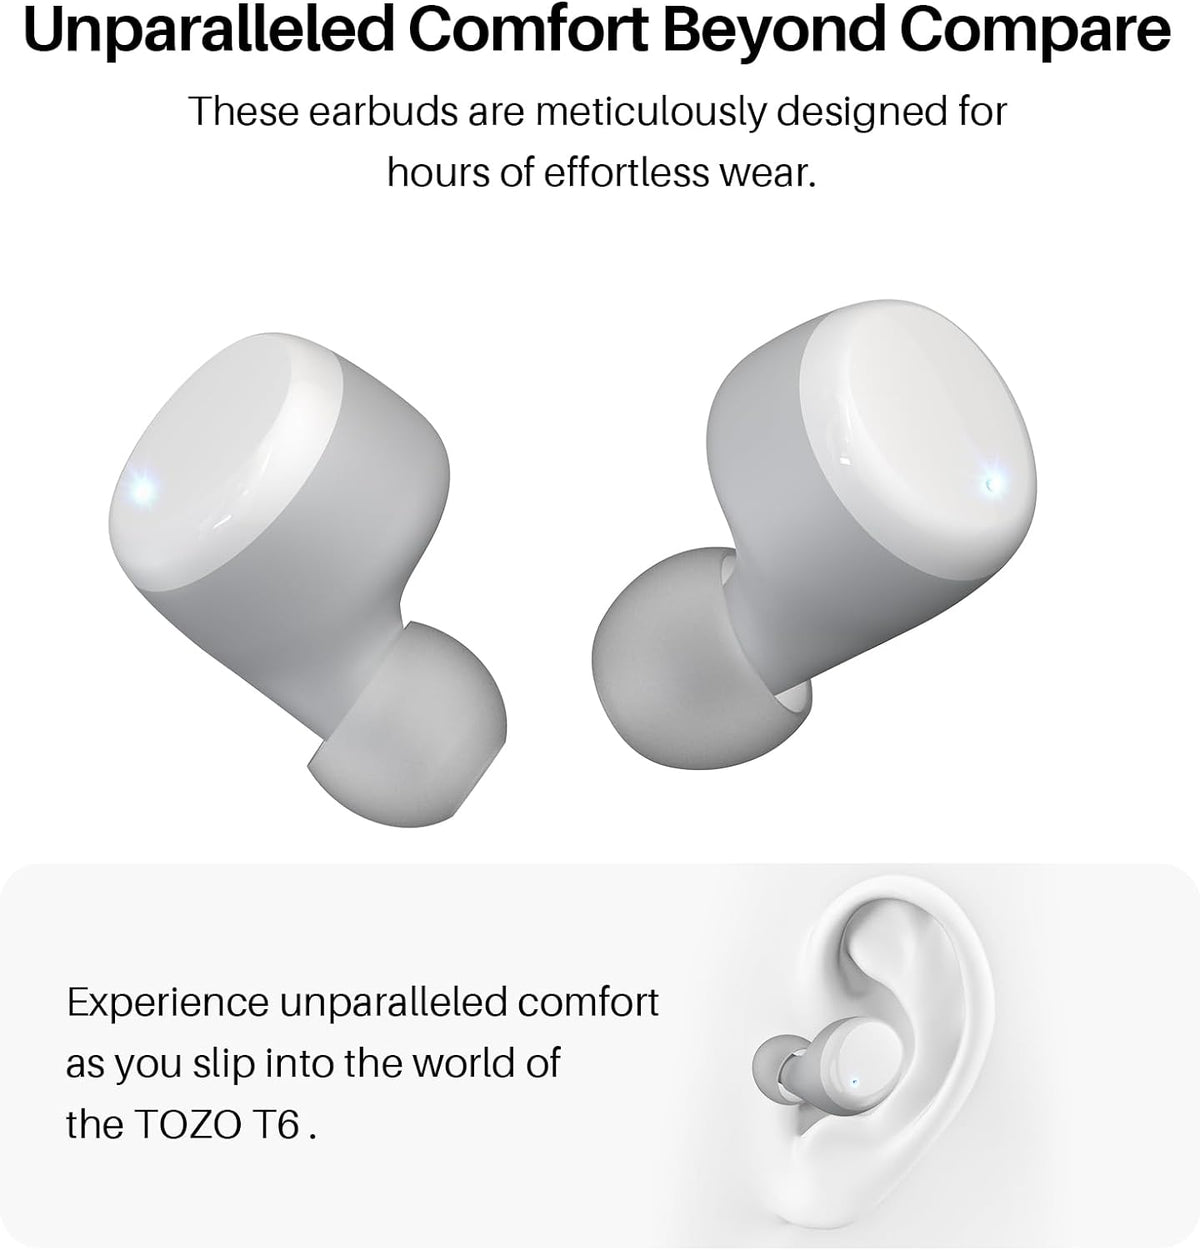 TOZO T6 True Wireless Earbuds